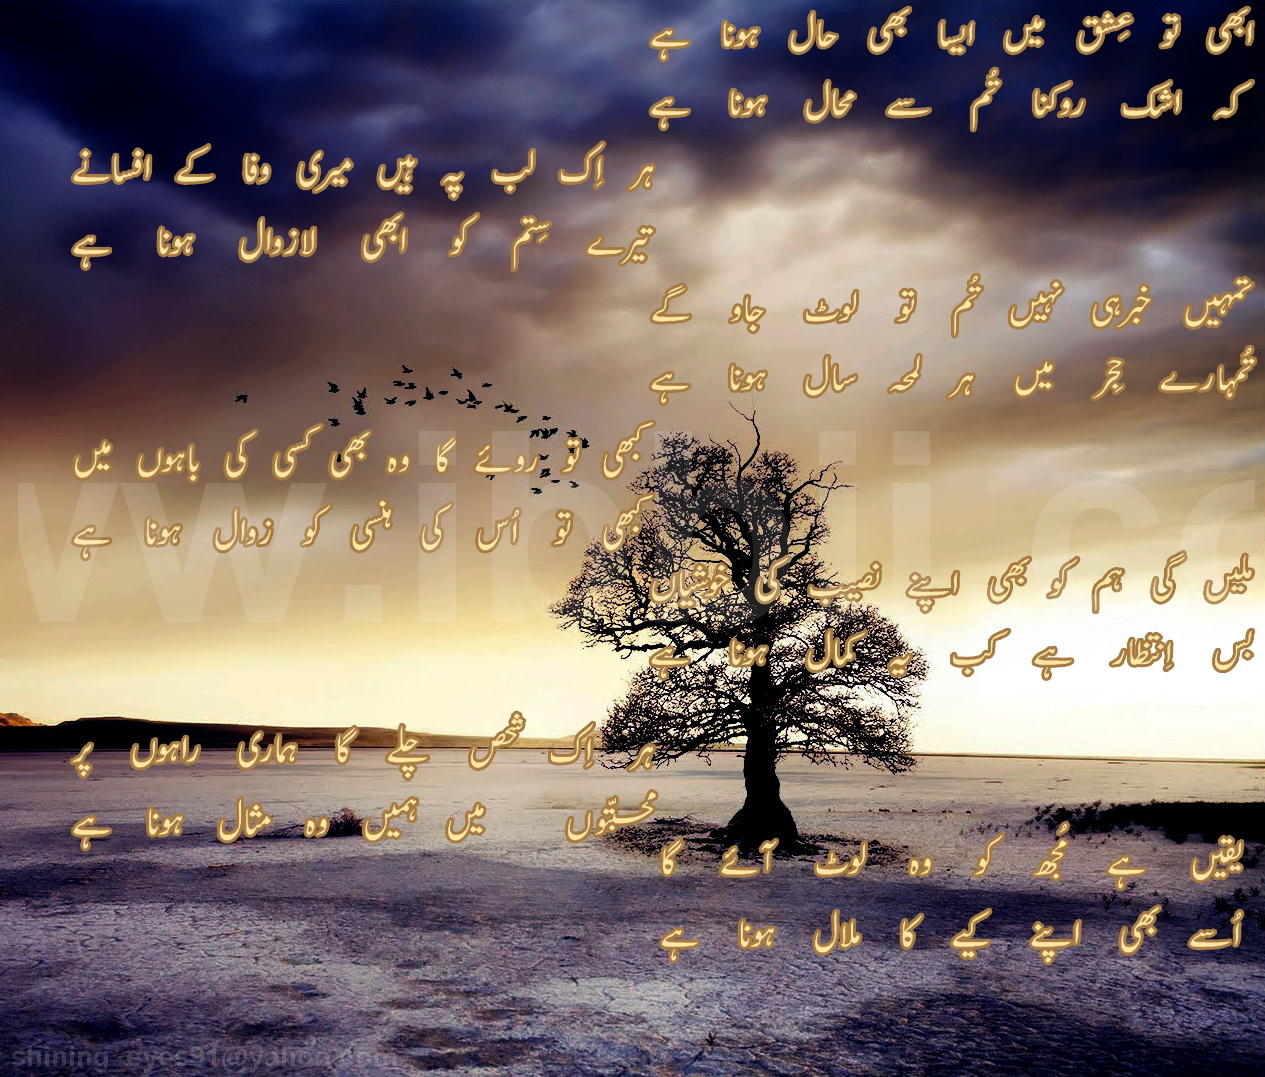 Sad ghazal poetry in urdu | Entertainment